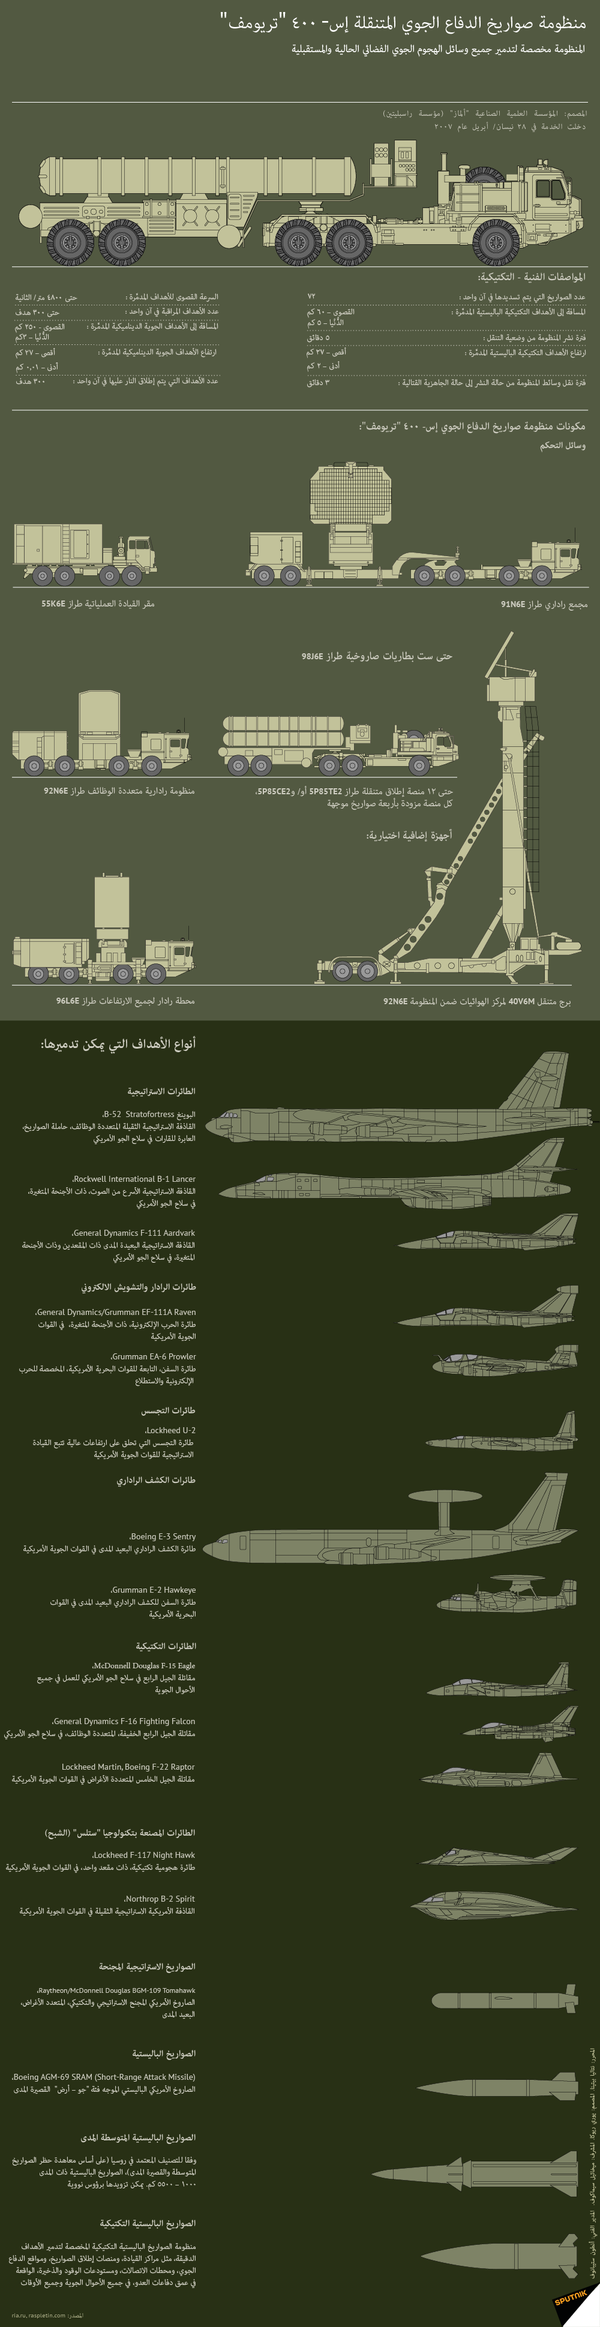 منظومة صواريخ الدفاع الجوي المتنقلة إس- 400 تريومف - سبوتنيك عربي